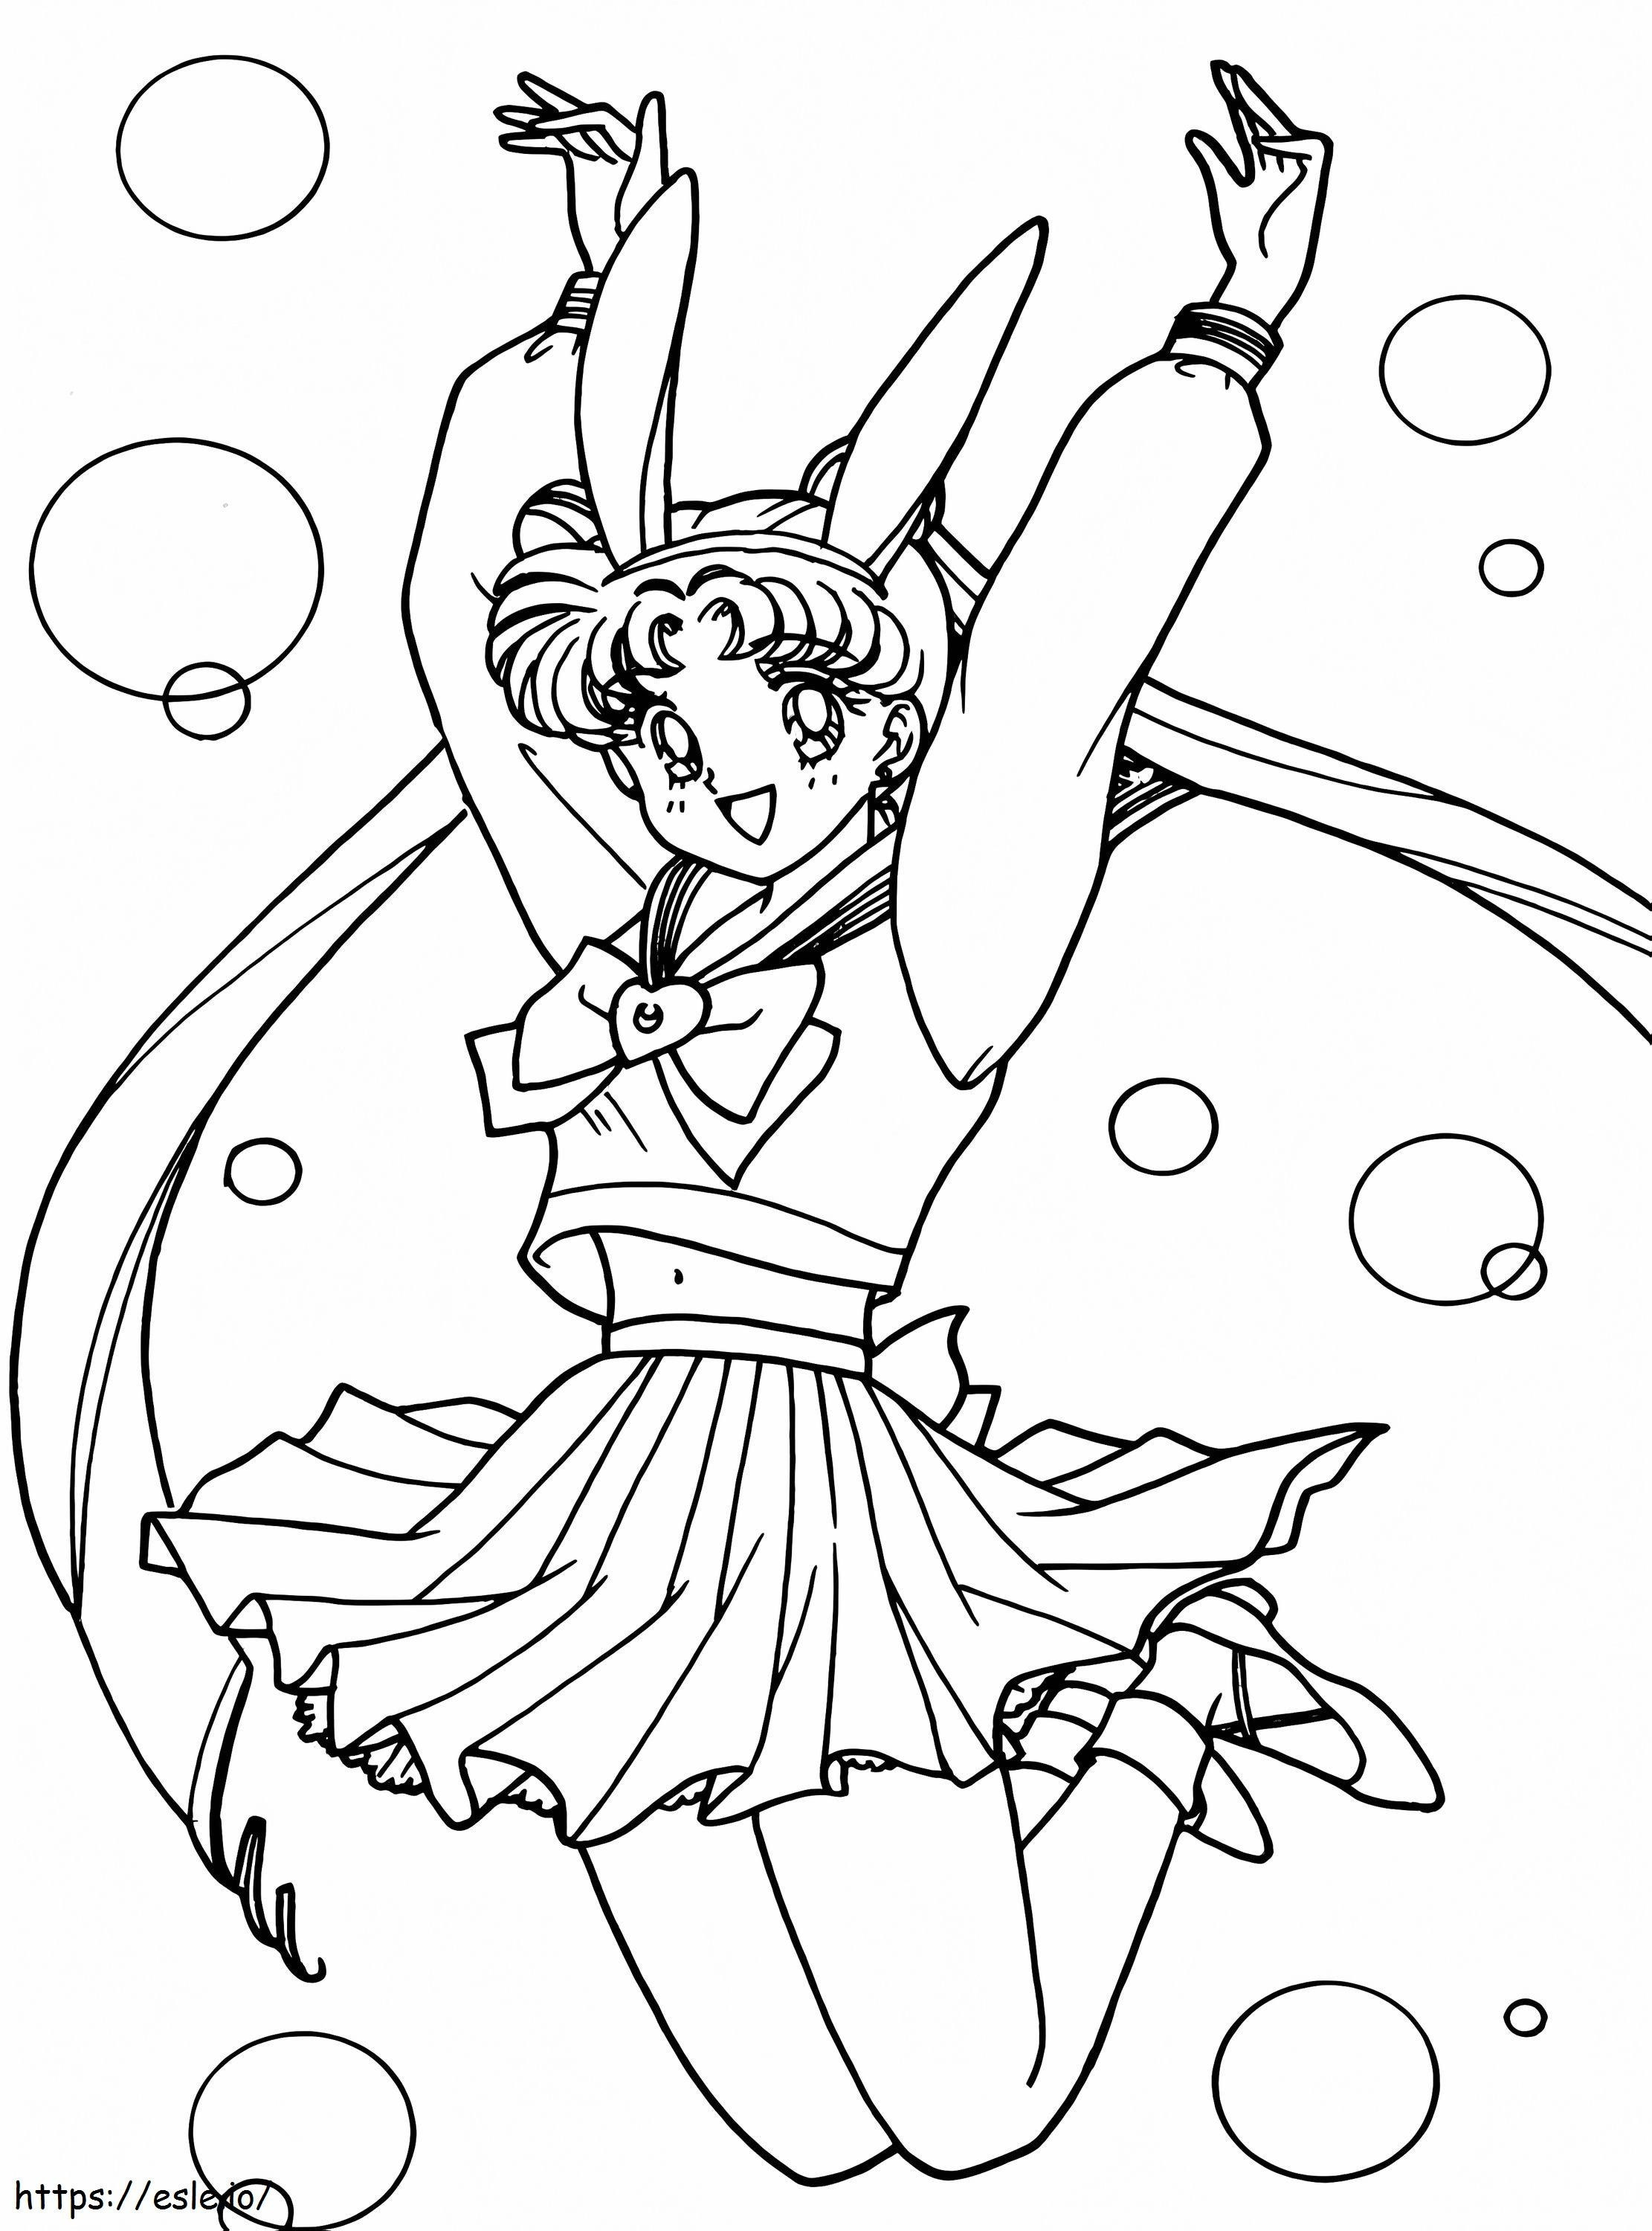 Selamat Sailor Moon Gambar Mewarnai